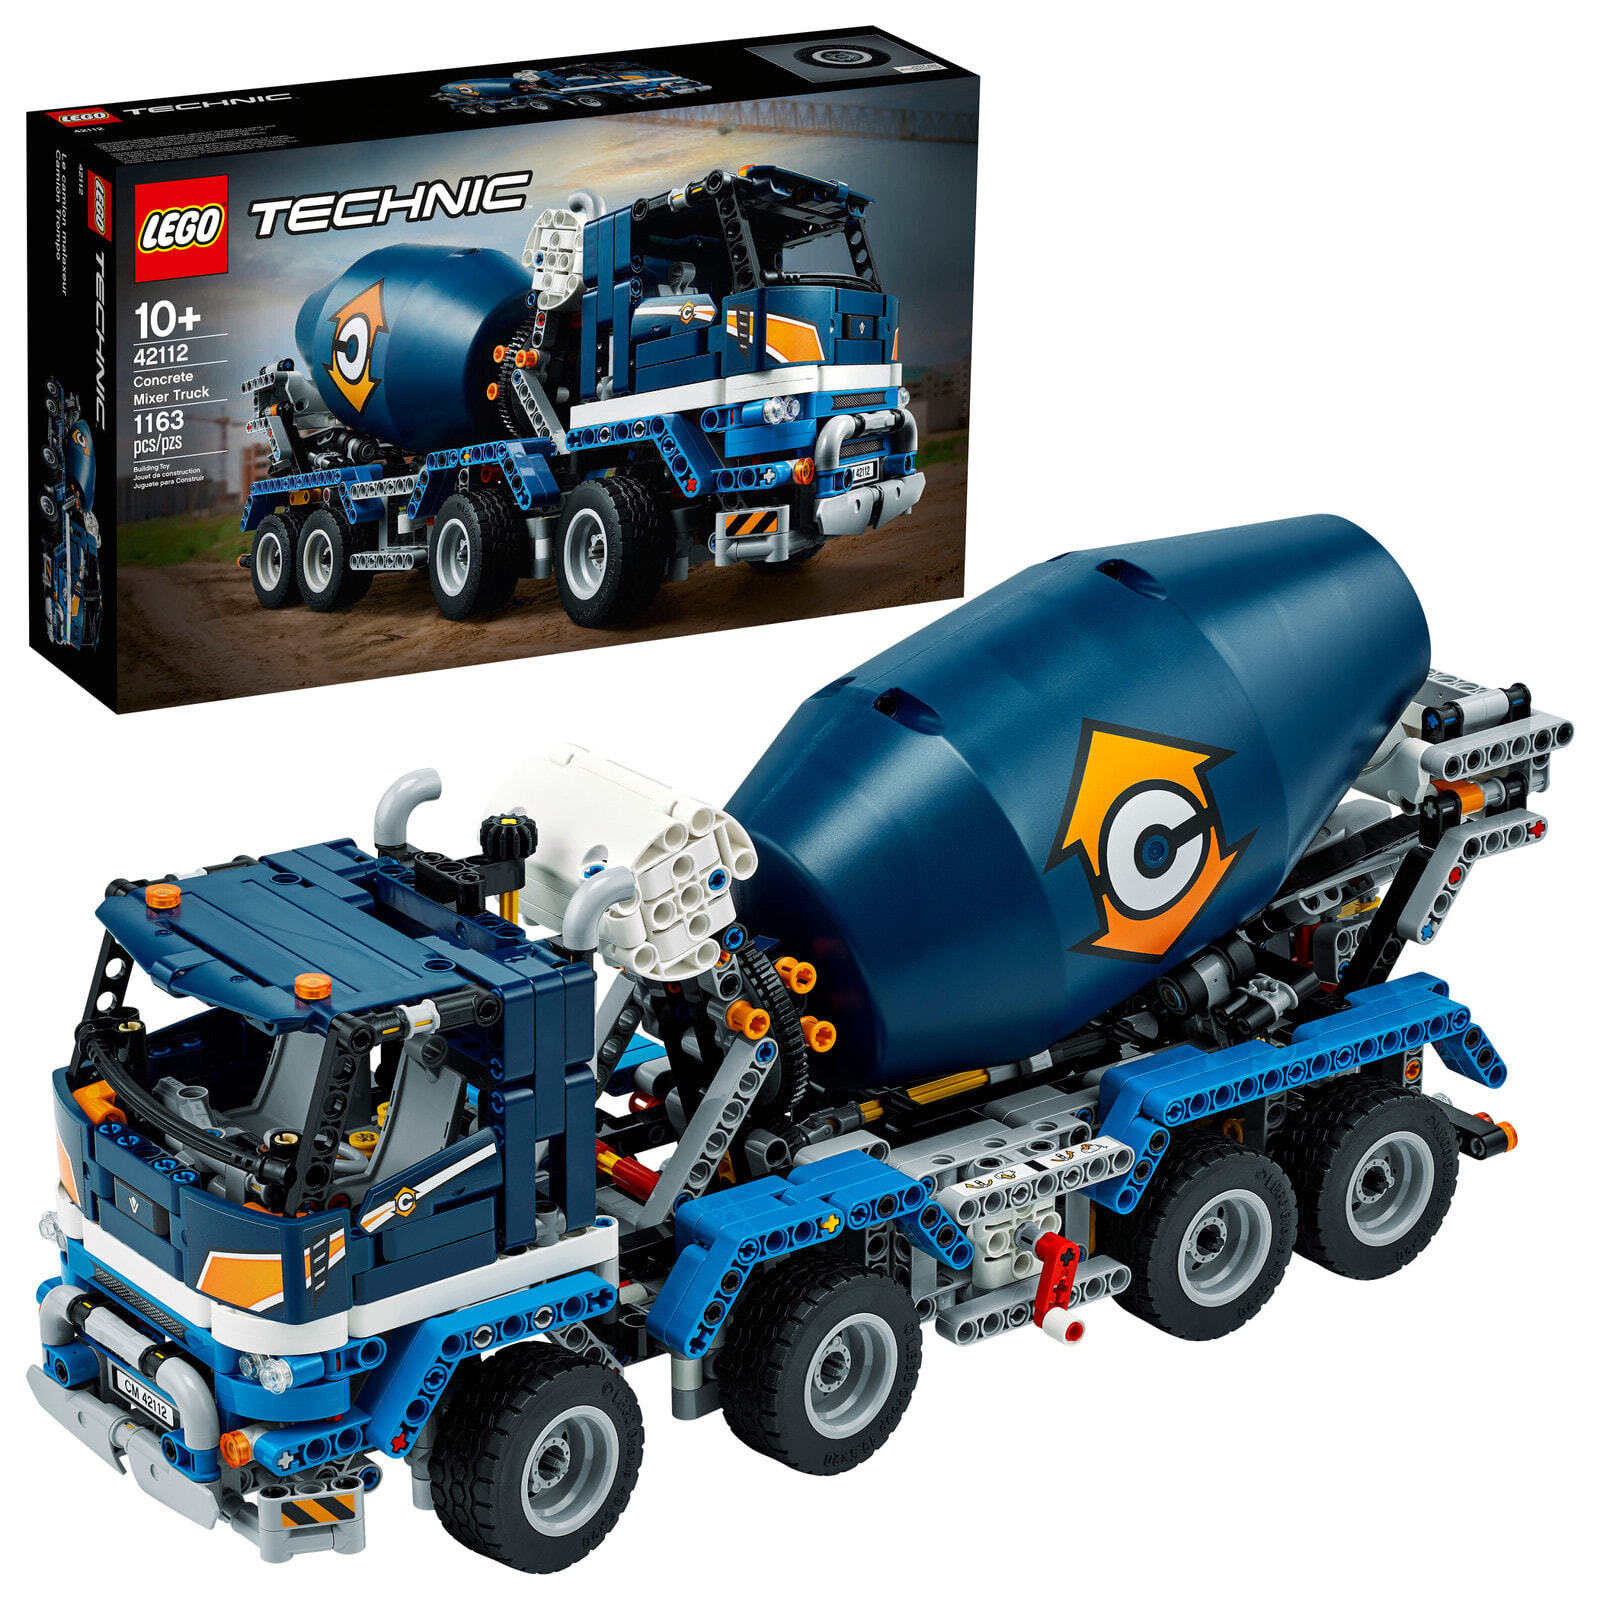 1163 pcs LEGO Technic 42112 Concrete Mixer Truck Age 10